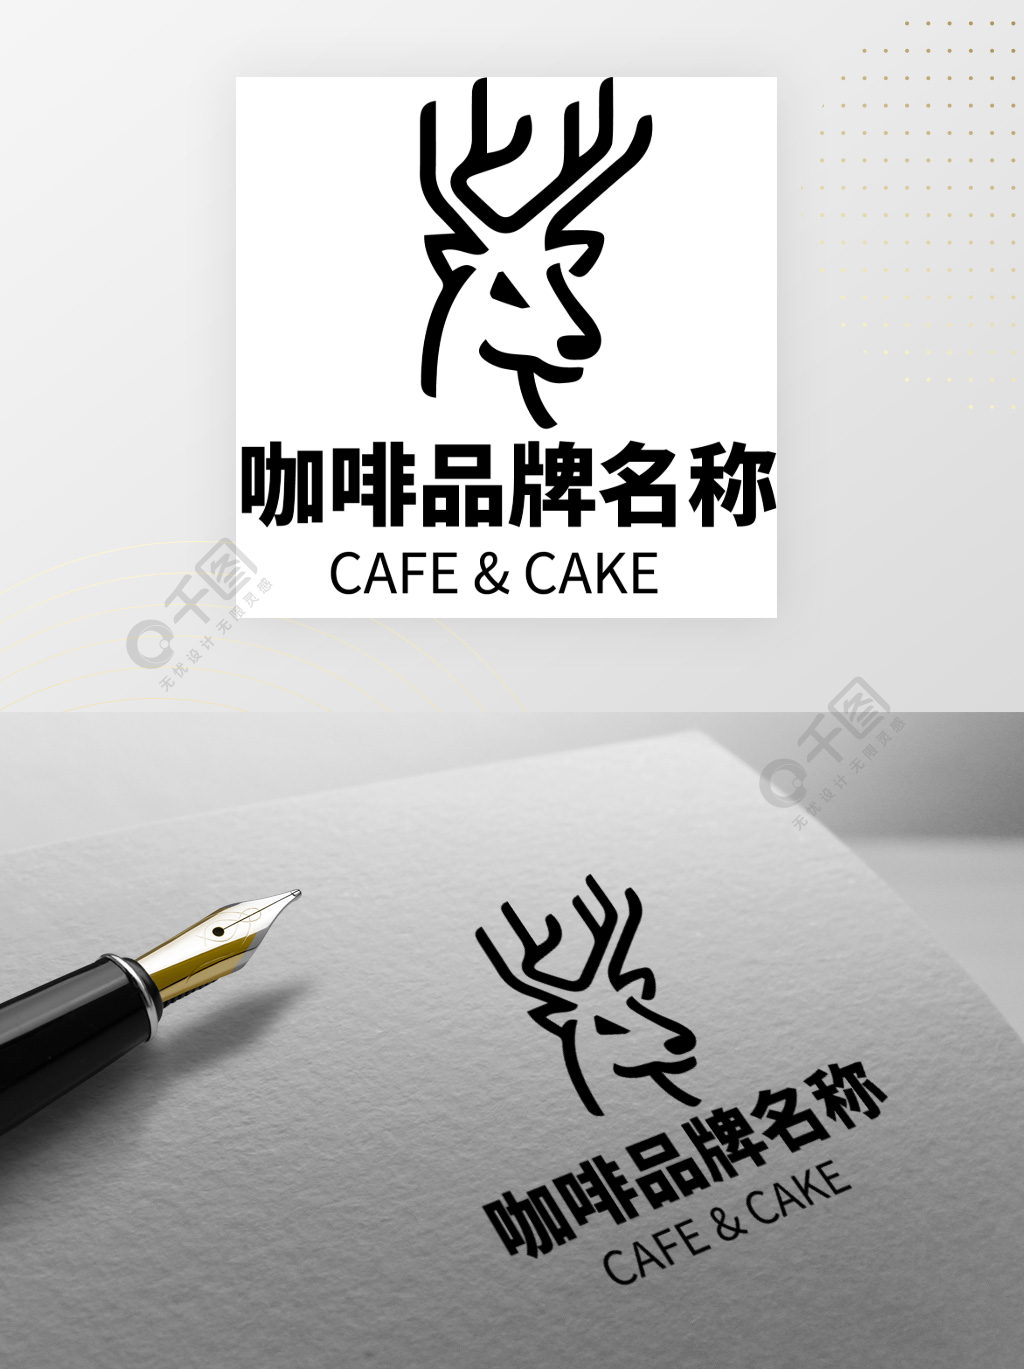 鹿角标志的咖啡图片